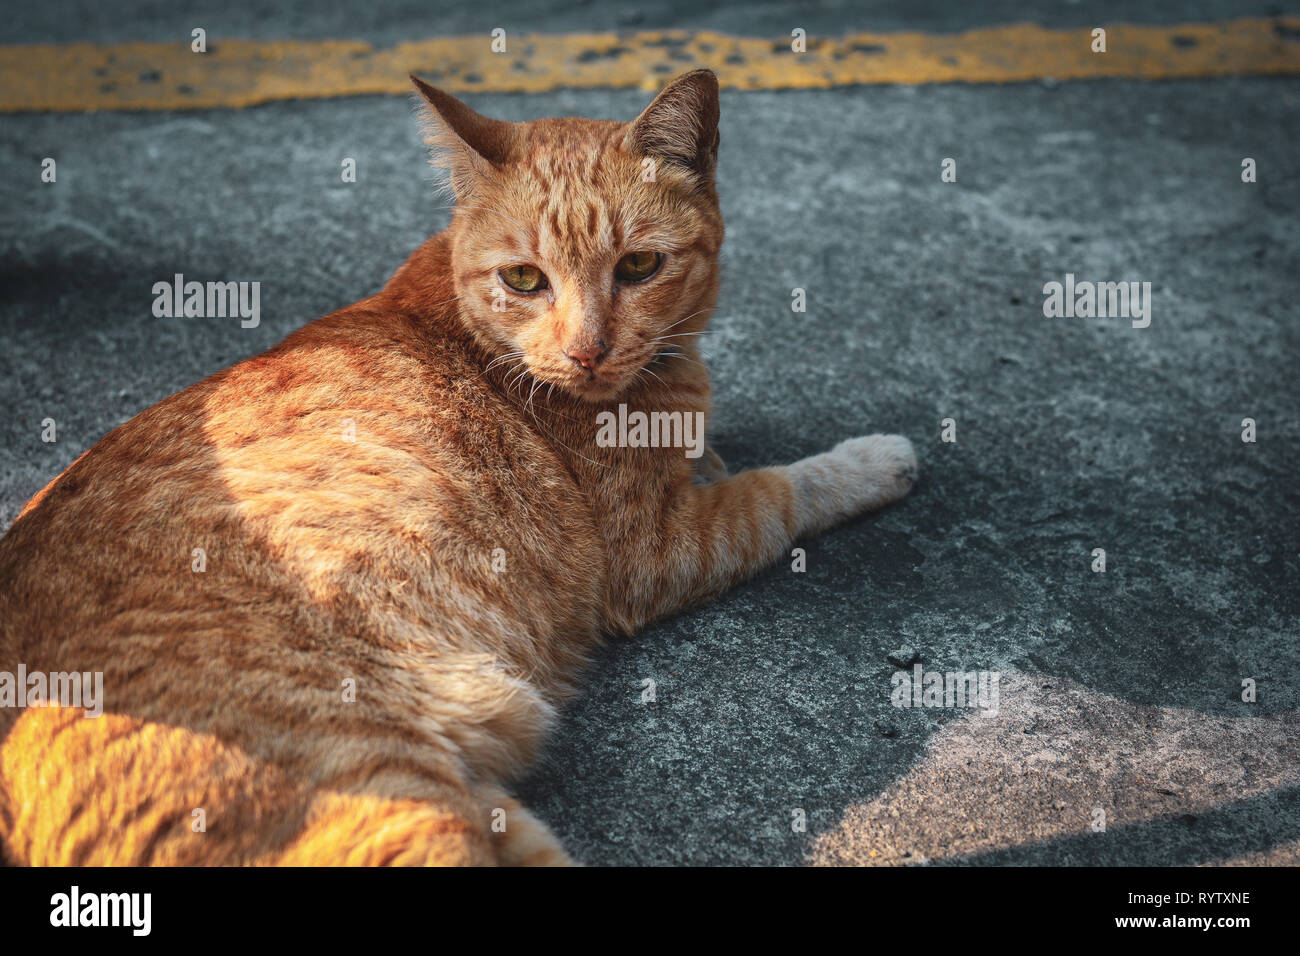 Portrait chat dormir sur le plancher.chaton à quelque chose.Cat avec tiger striped reposant sur le sol Banque D'Images